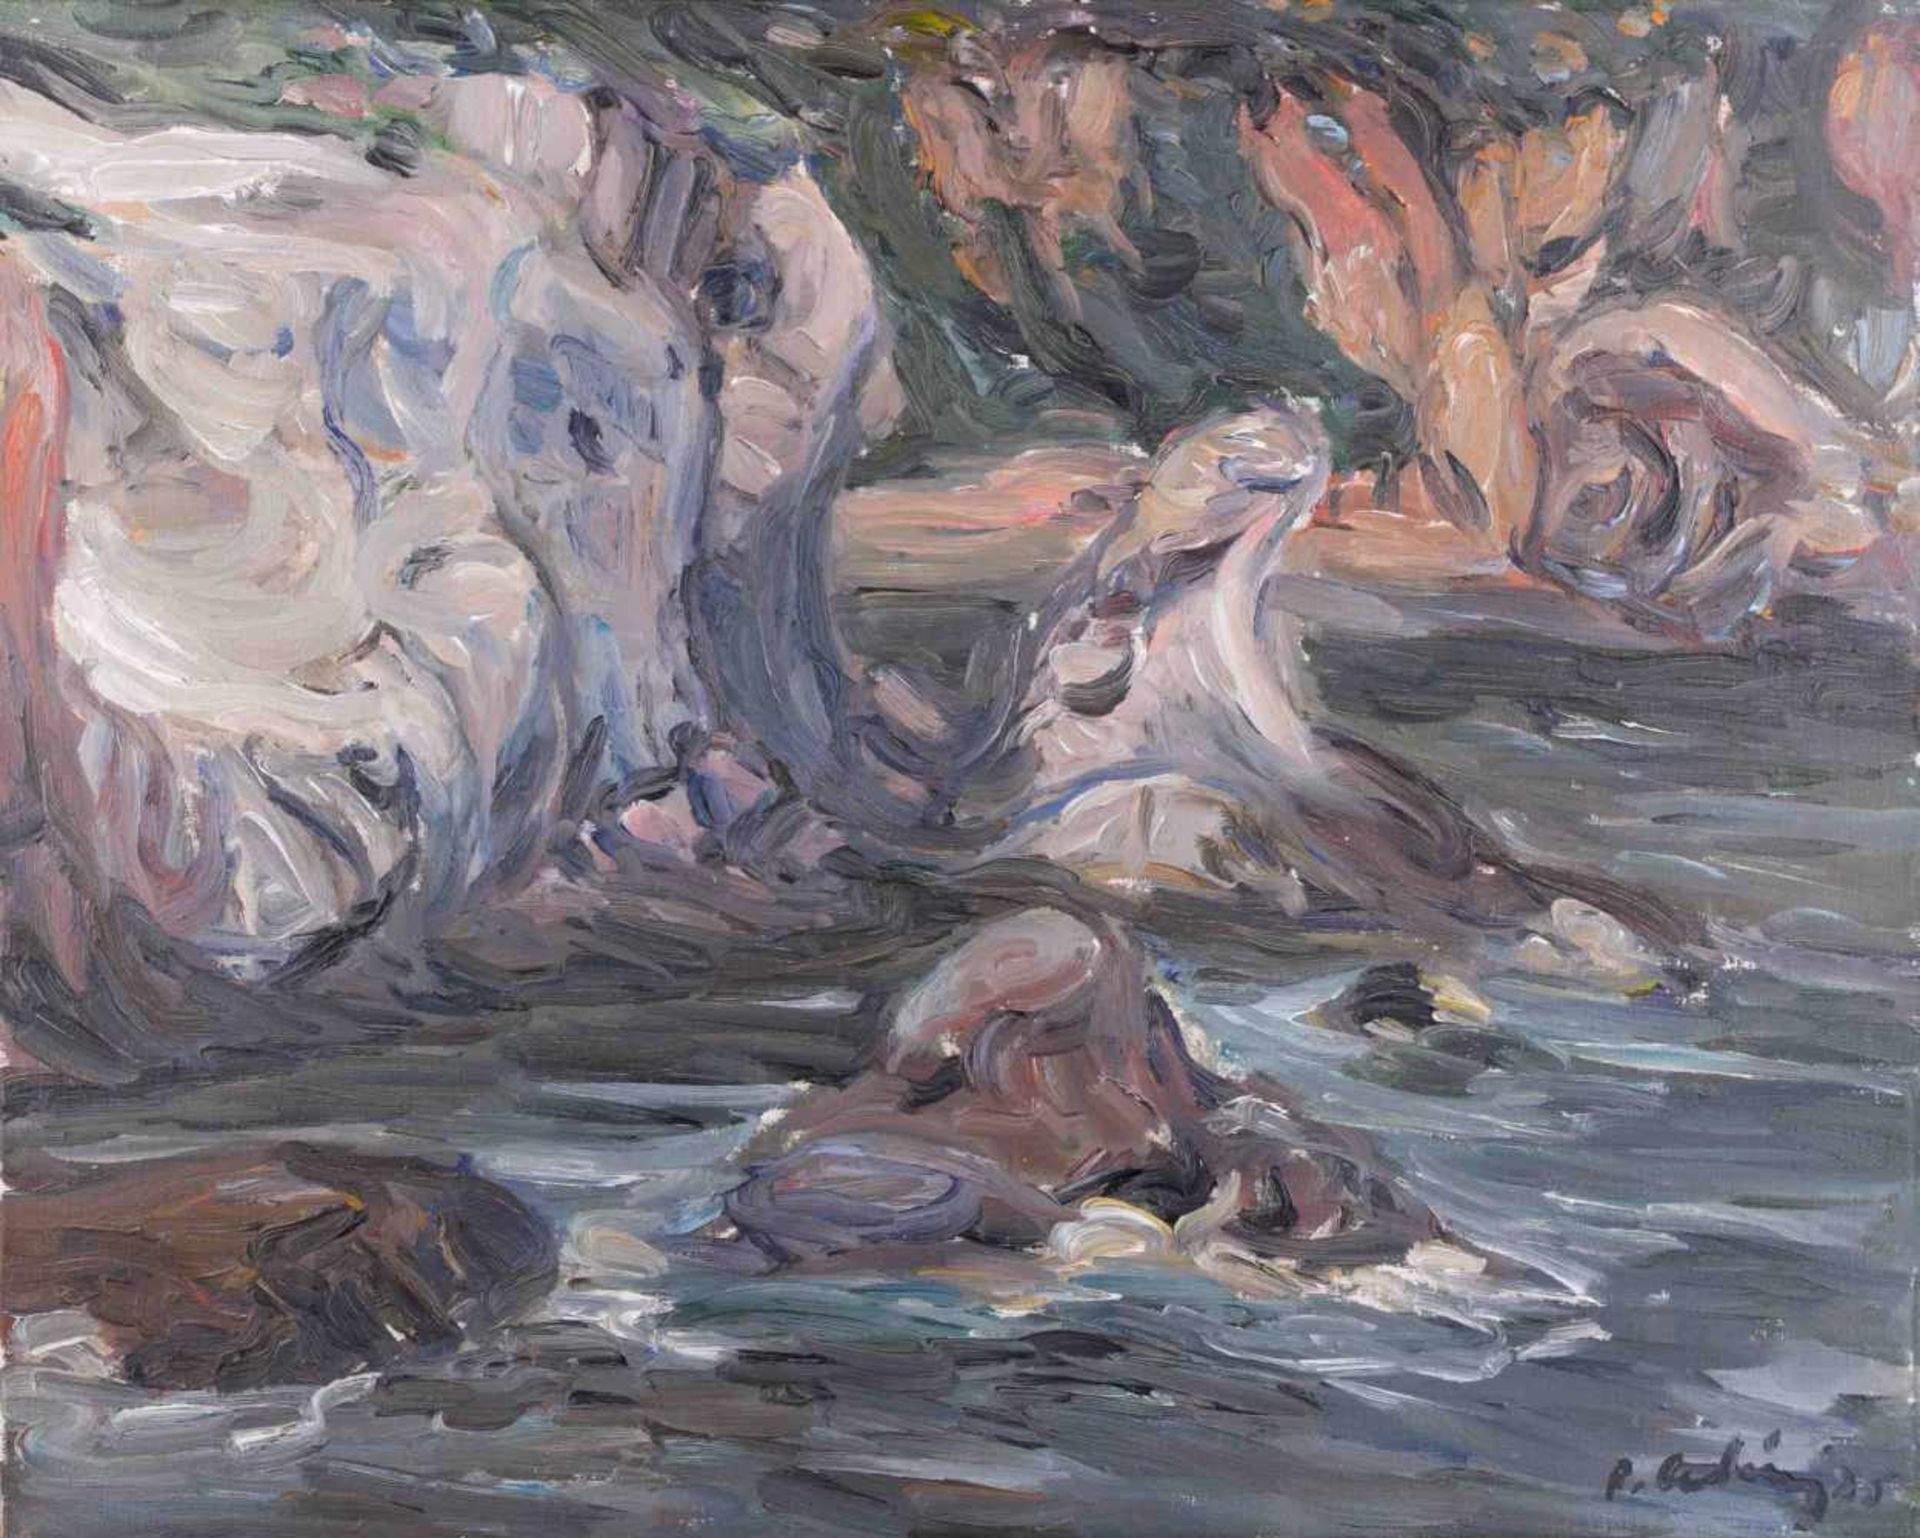 Roland LADWIG (1935-2014) "Cote d'azur" Gemälde Öl/Leinwand, 59 cm x 73,5 cm, rechts unten